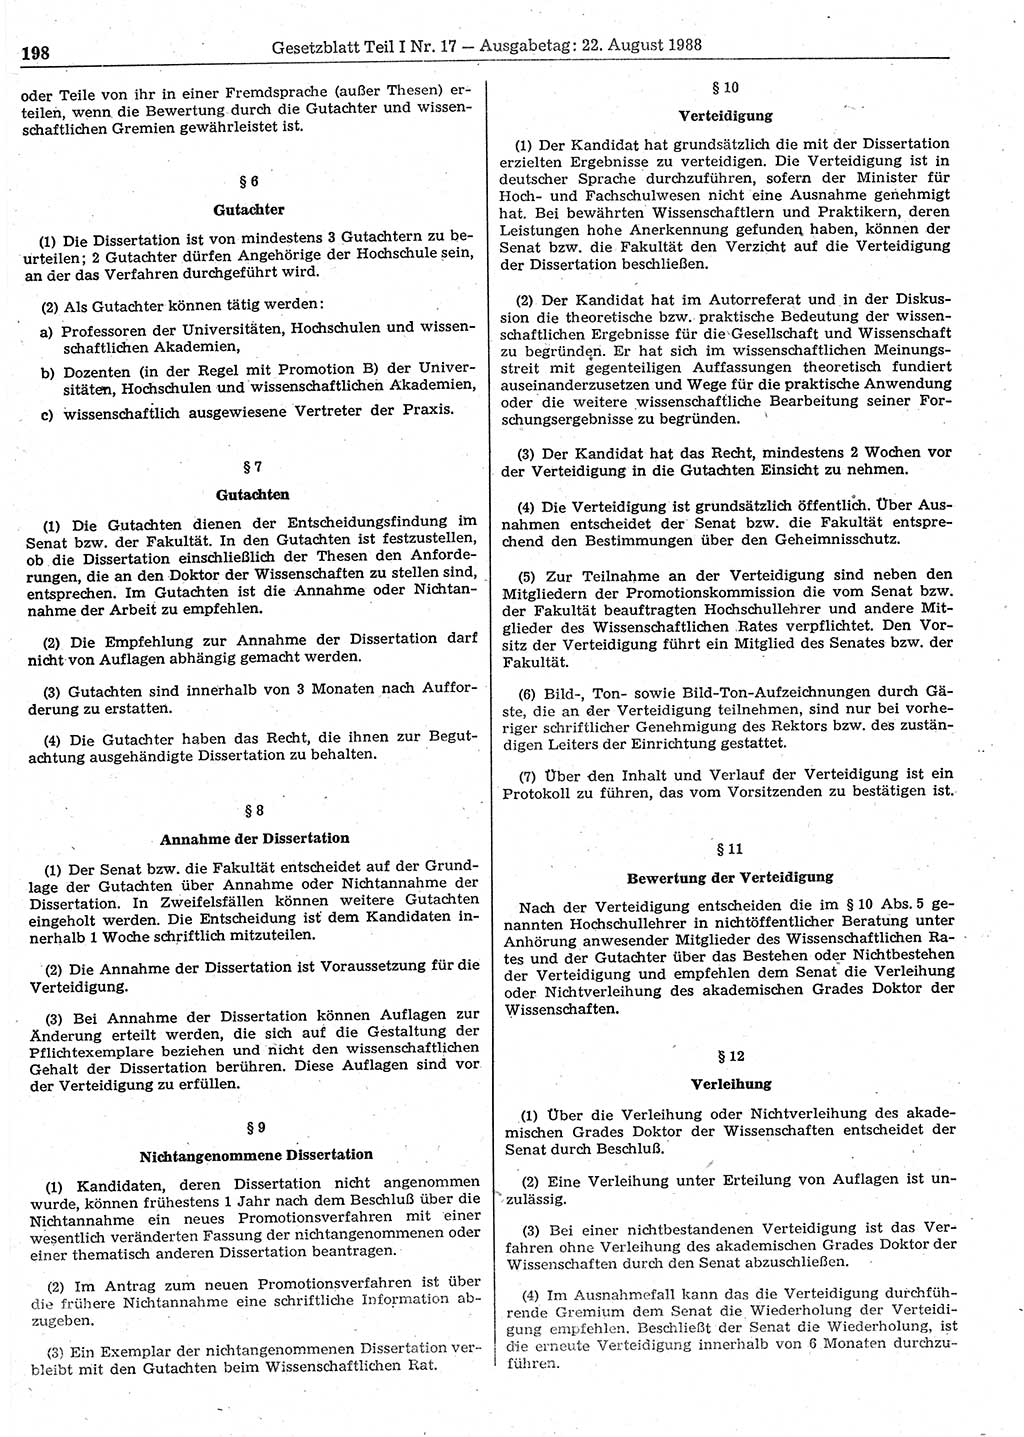 Gesetzblatt (GBl.) der Deutschen Demokratischen Republik (DDR) Teil Ⅰ 1988, Seite 198 (GBl. DDR Ⅰ 1988, S. 198)